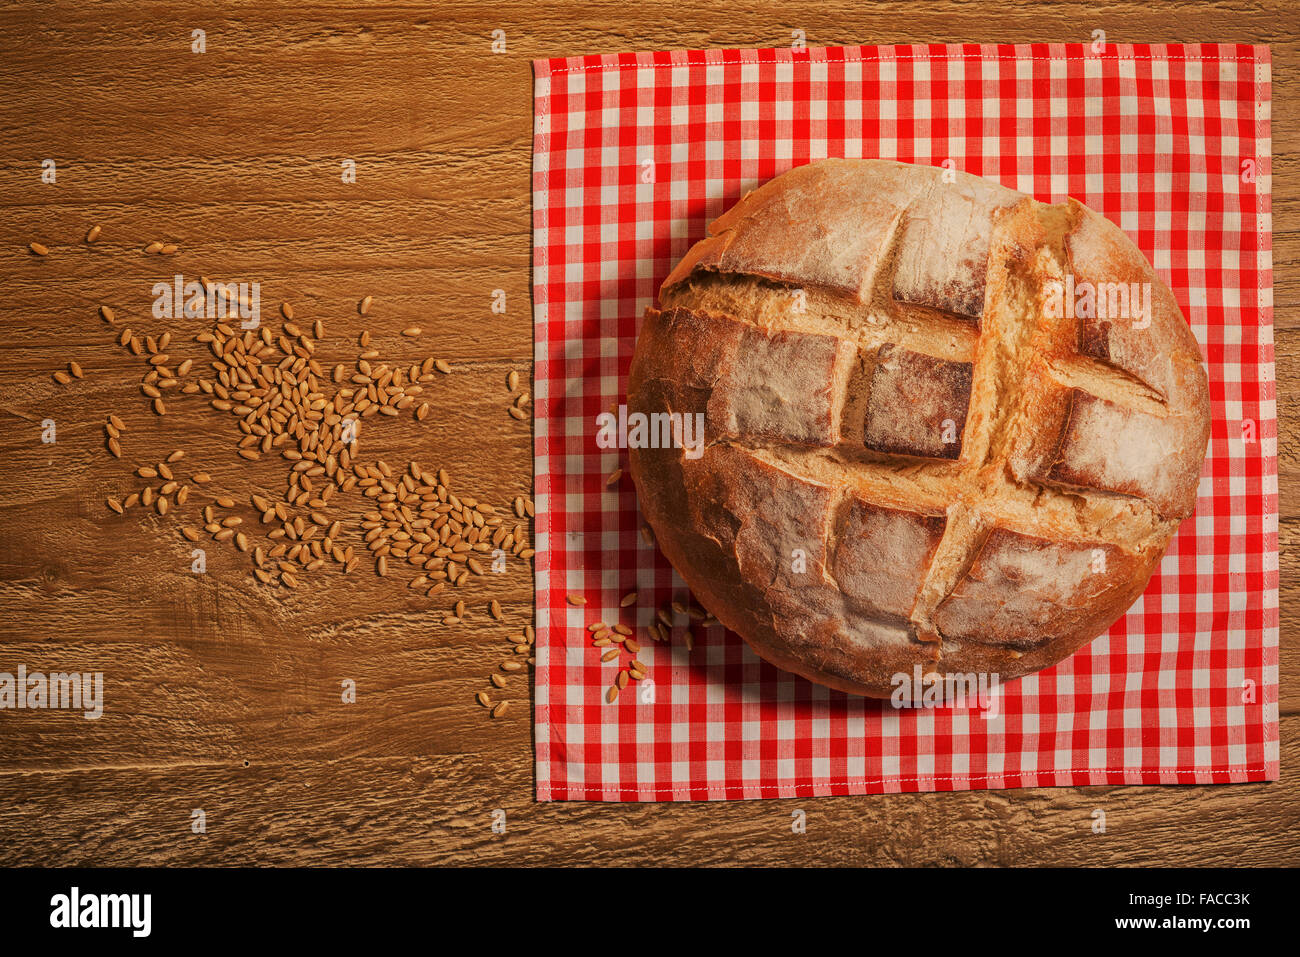 Filone di freschi fatti in casa di pasta acida pane sul tavolo di legno Foto Stock